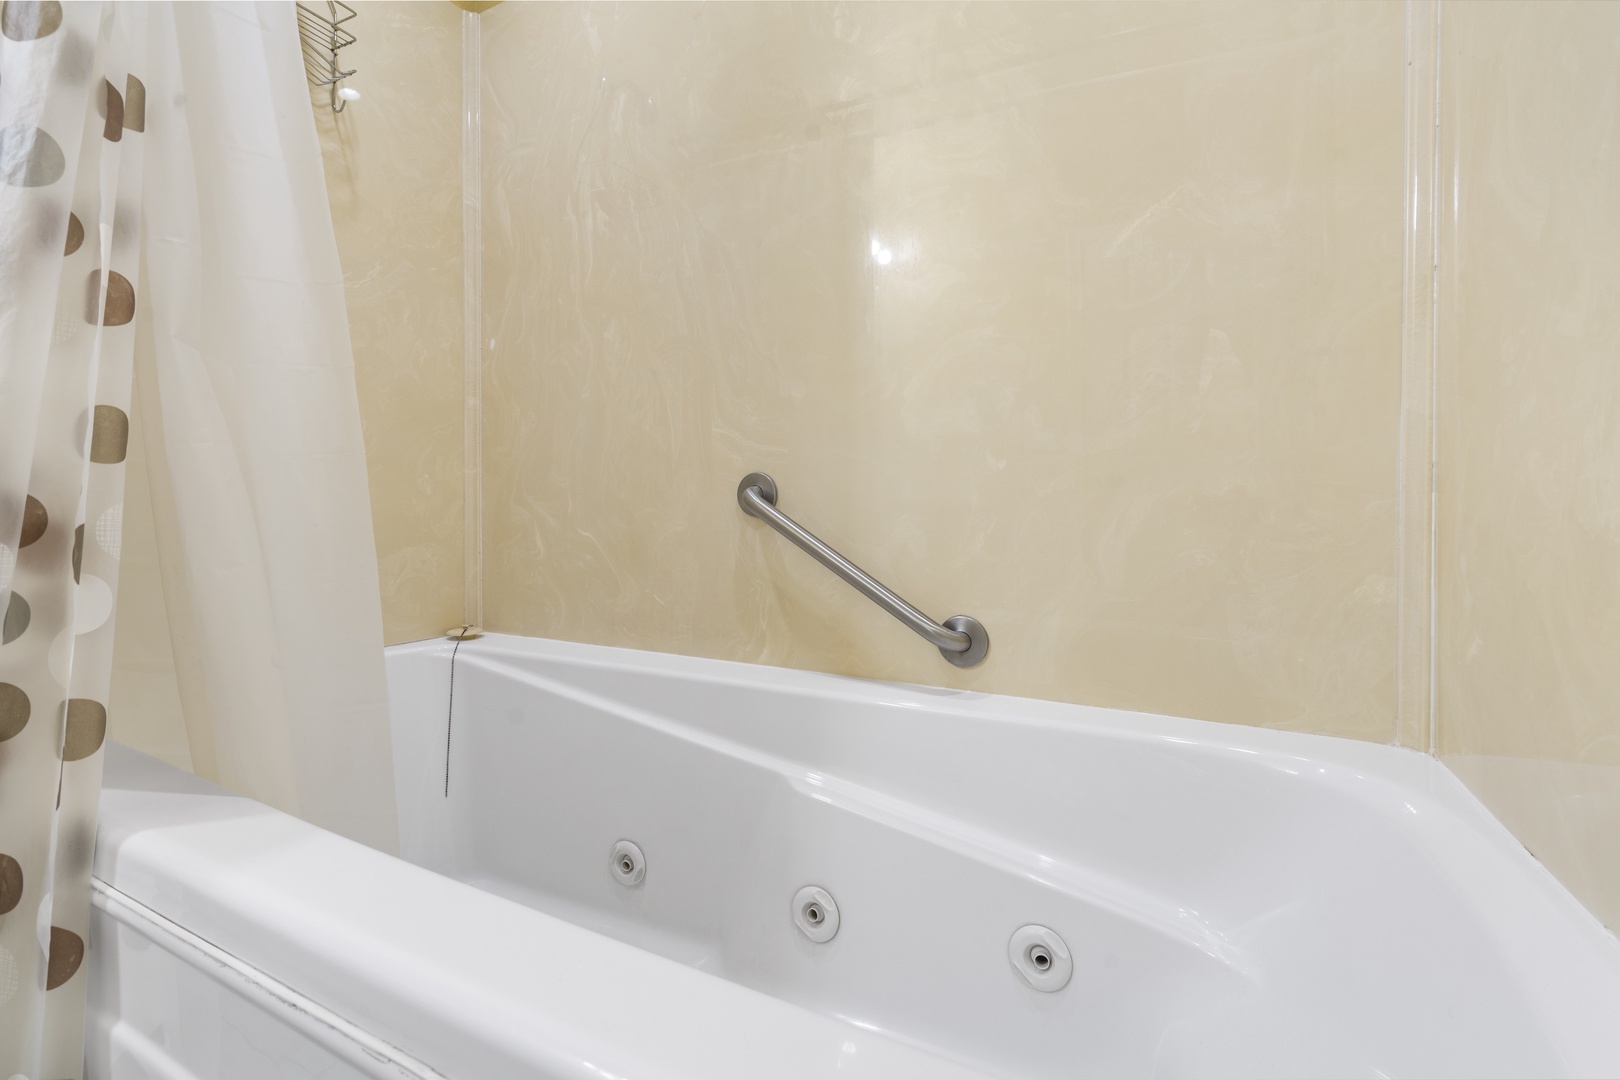 Bathroom #1 with Shower/Tub Combo En-Suite to Bedroom #1